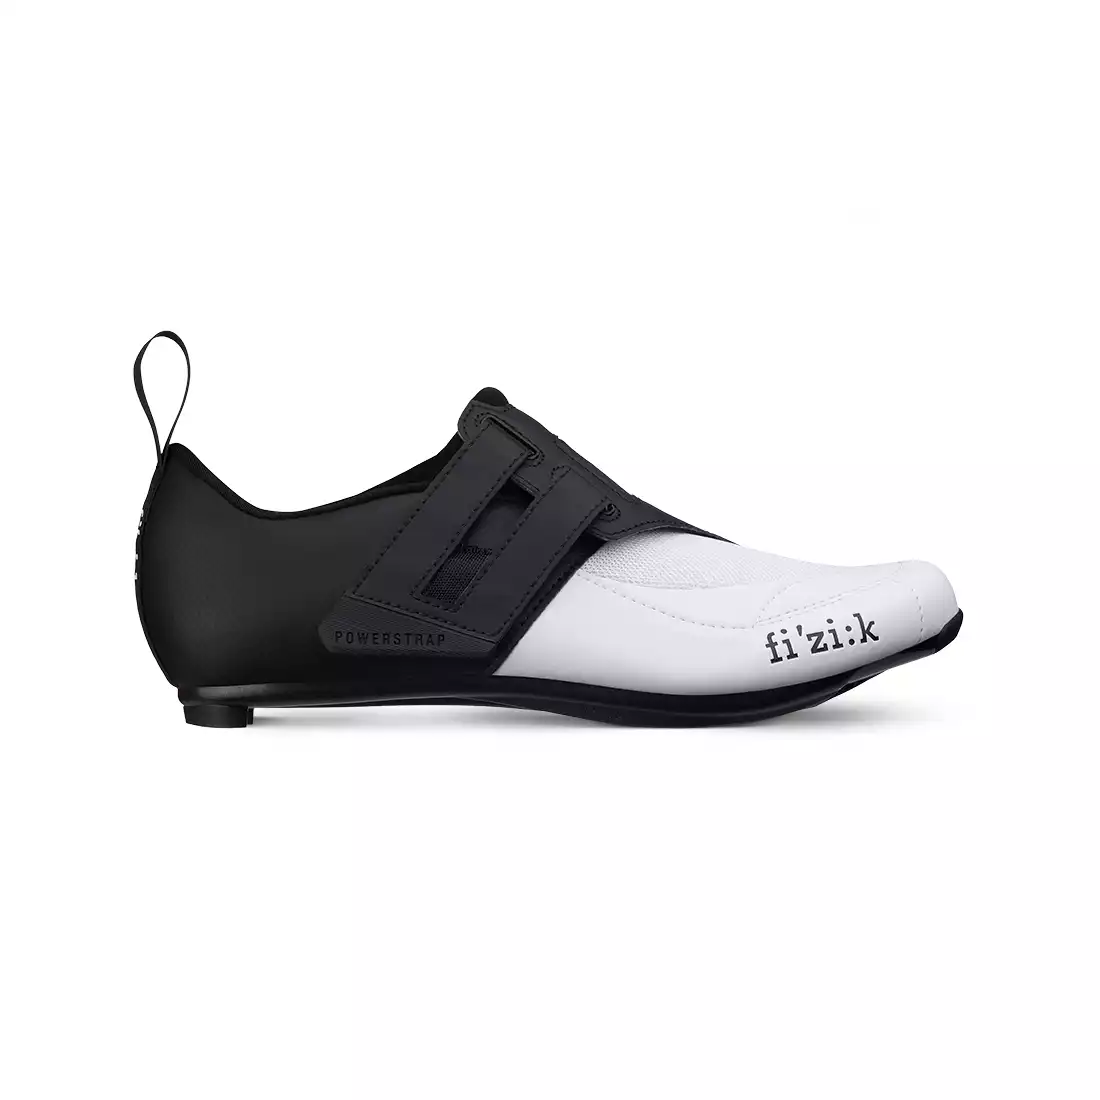 FIZIK TRANSIRO POWERSTRAP R4 buty rowerowe do triathlonu biały czarny